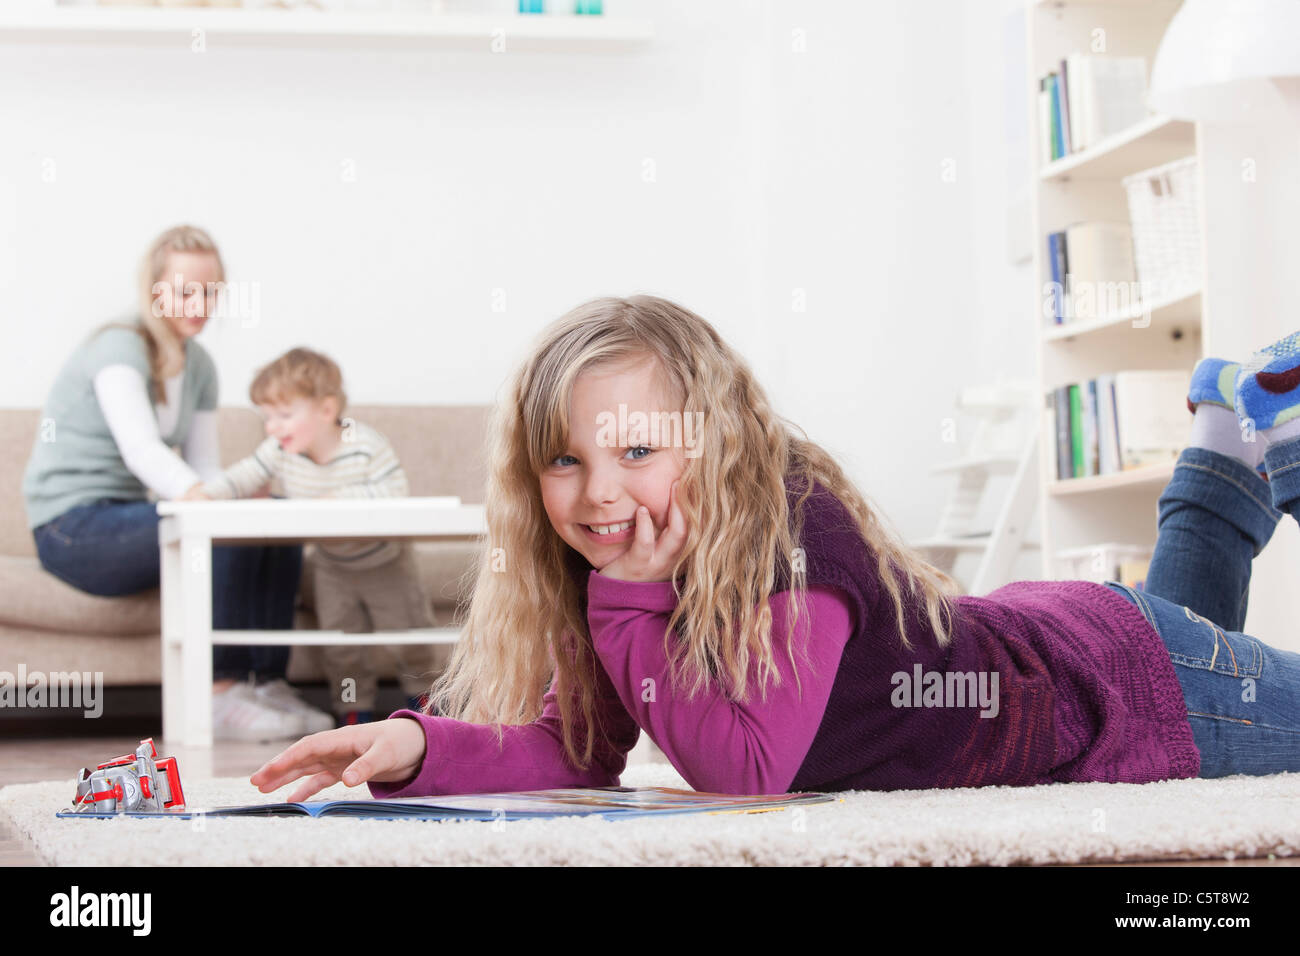 In Germania, in Baviera, Monaco di Baviera, ragazza con libro sul pavimento, madre e figlio in background Foto Stock